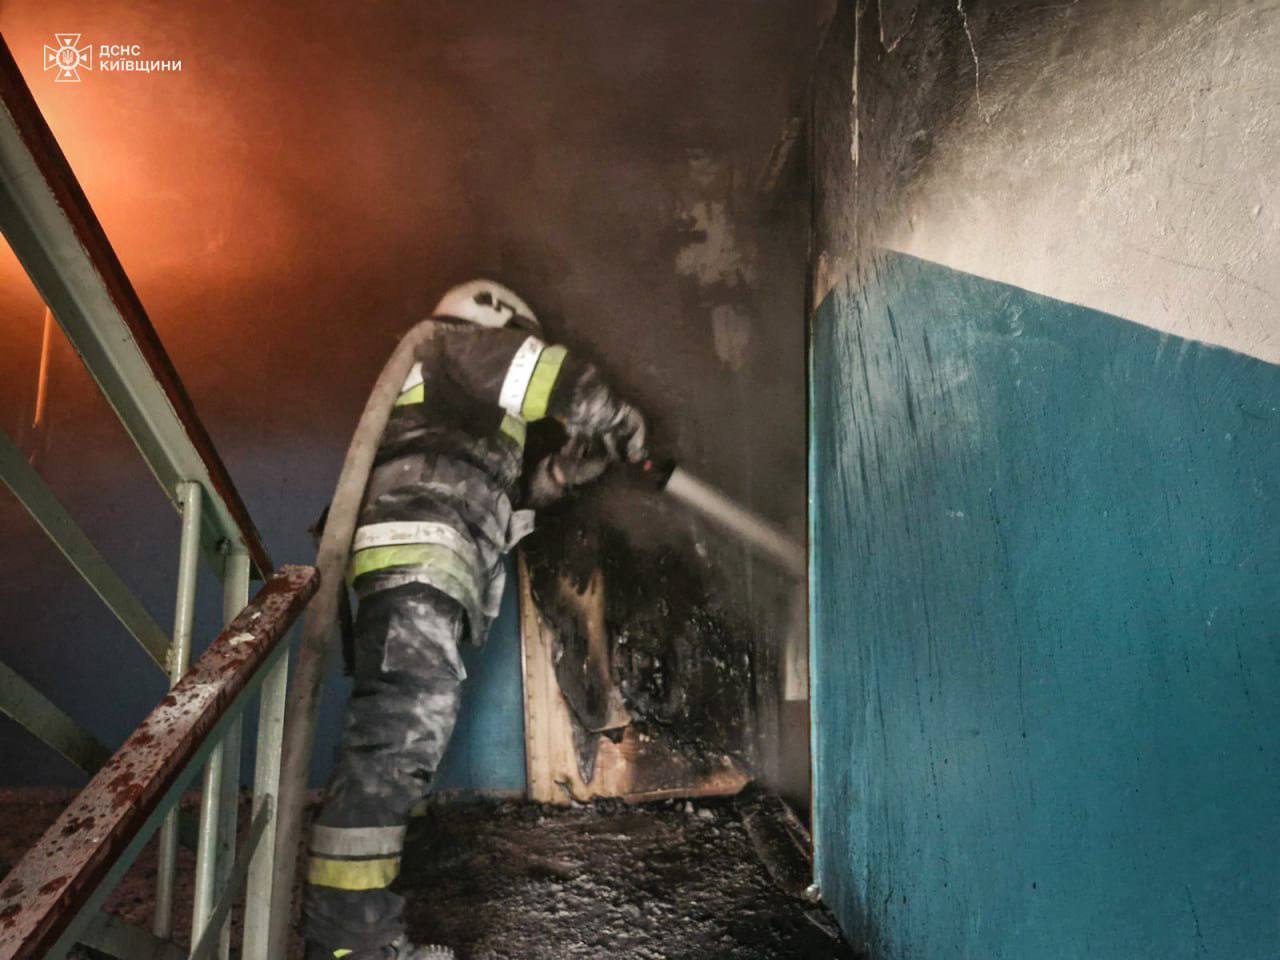 На Київщині в багатоповерхівці горіли електрощитові: з будинку евакуювали 13 осіб, зокрема 3 дітей. Фото